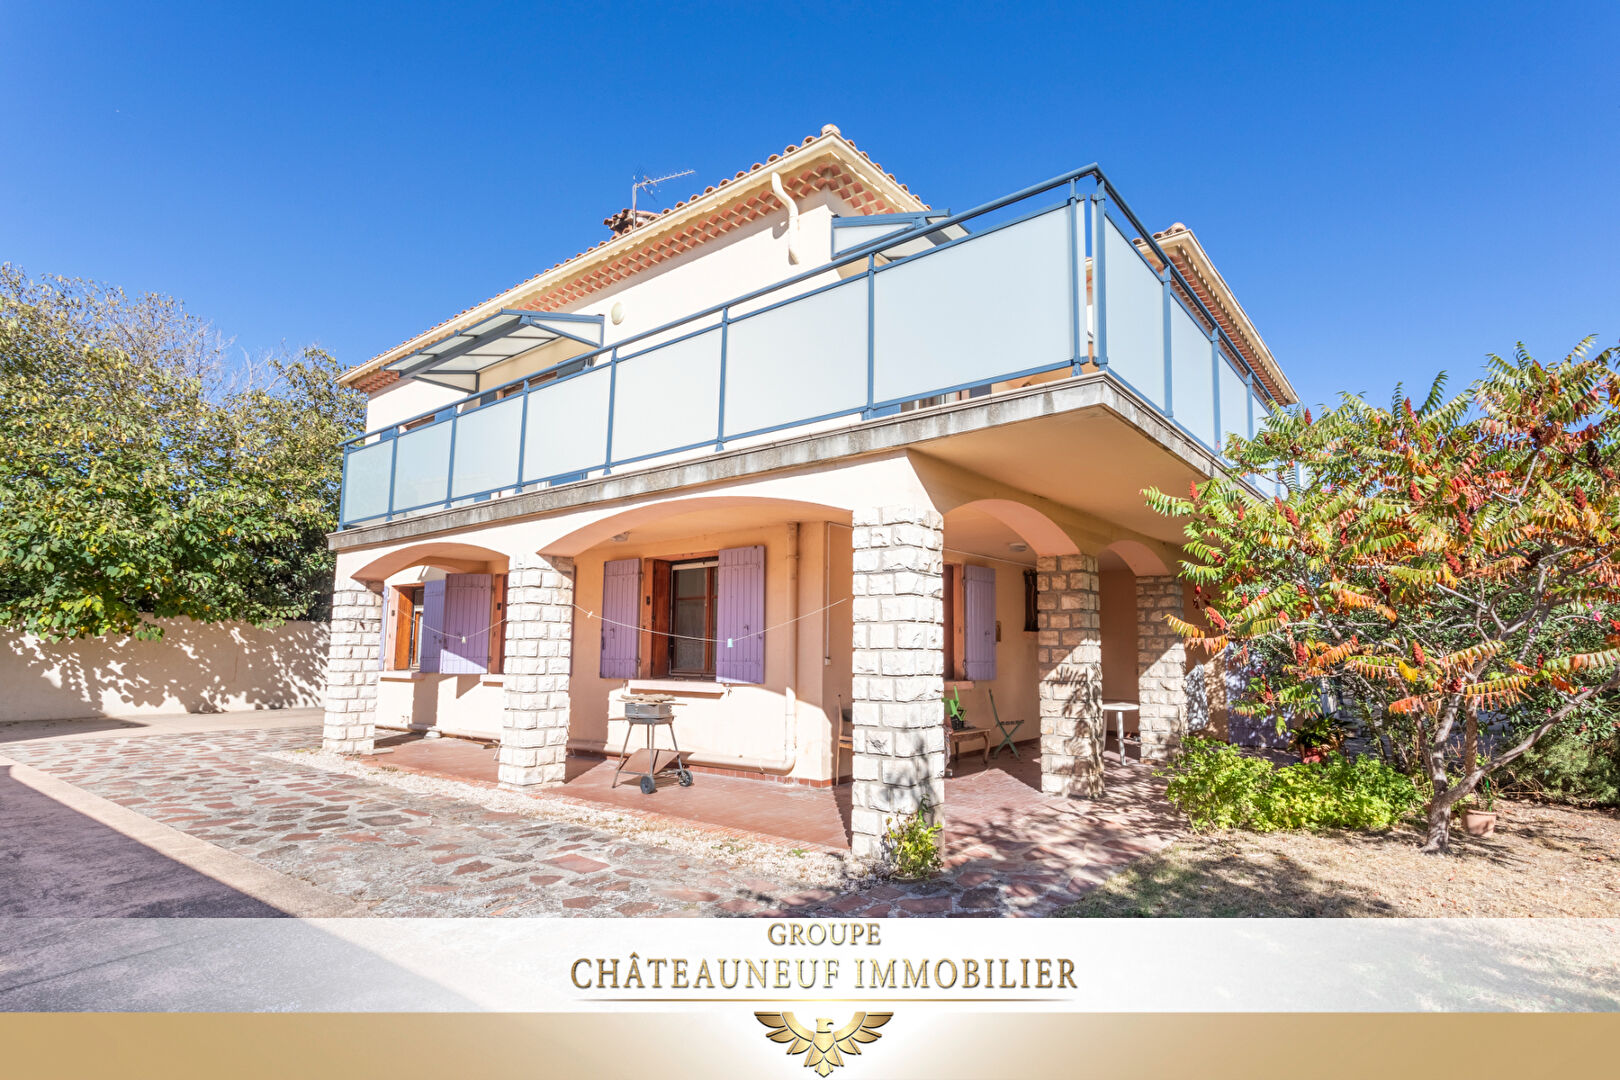 Maison Chateauneuf /  6 pièces 163 m2 sur 727 m² // Garage